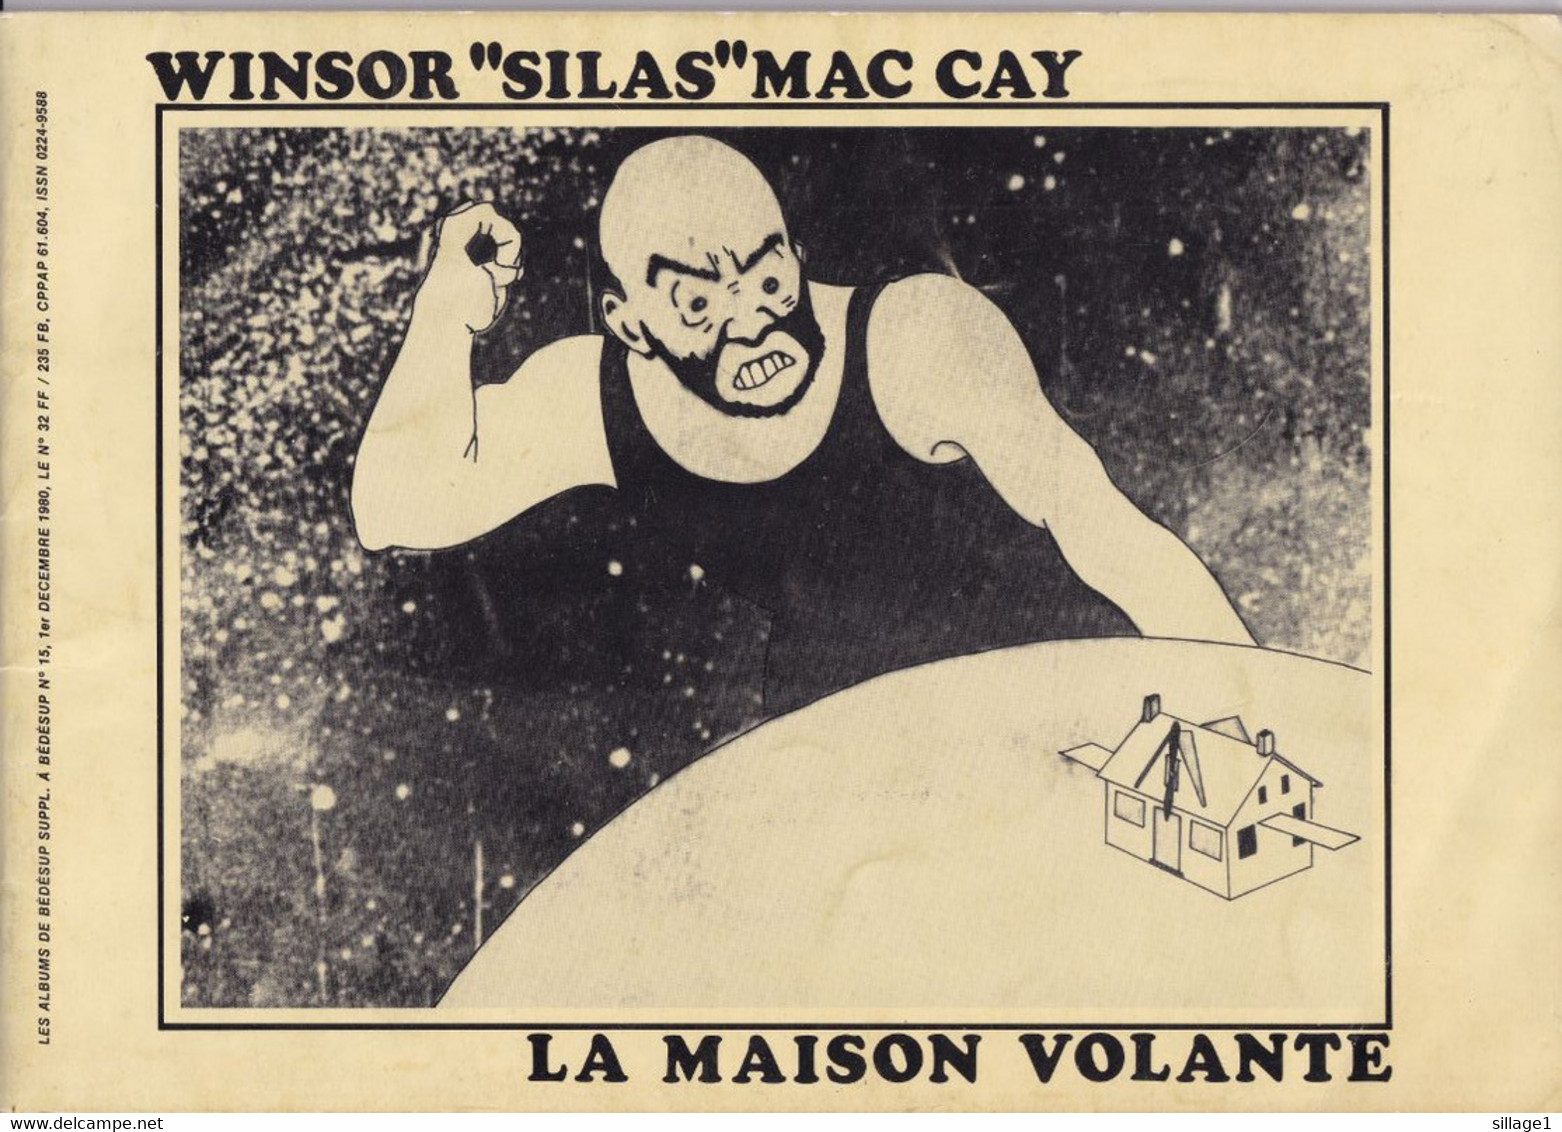 Winsor "Silas" Mac Cay - La Maison Volante - Exemplaire Numéroté 307/3500 Bédésup 1980 - Tirage De Tête - Rare - First Copies